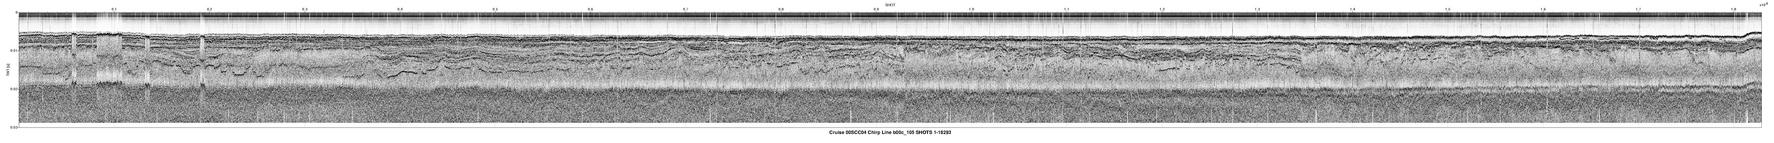 00SCC04 b00c_105 seismic profile image